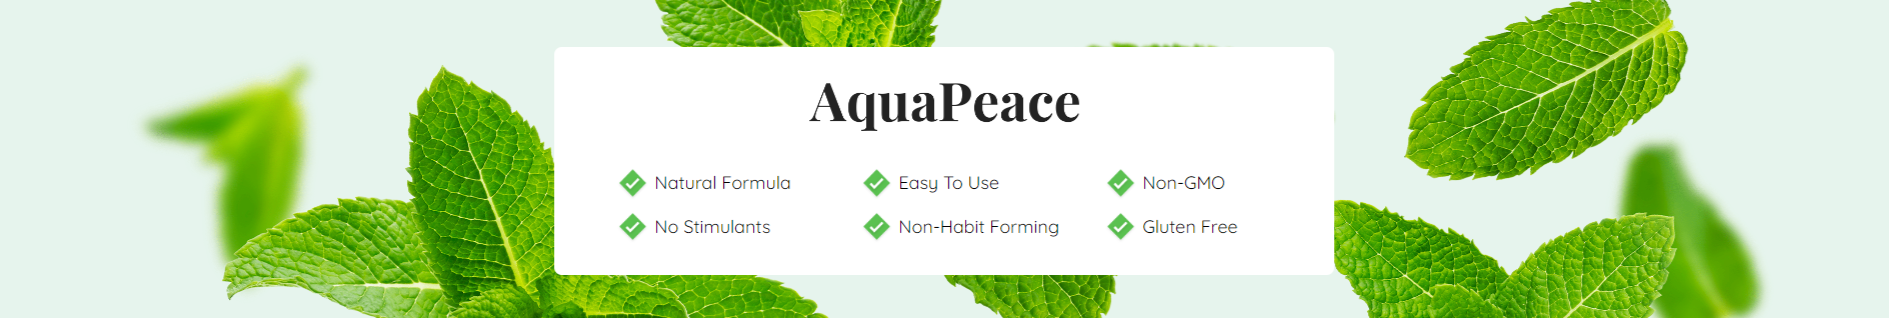 aqua-peace-natural